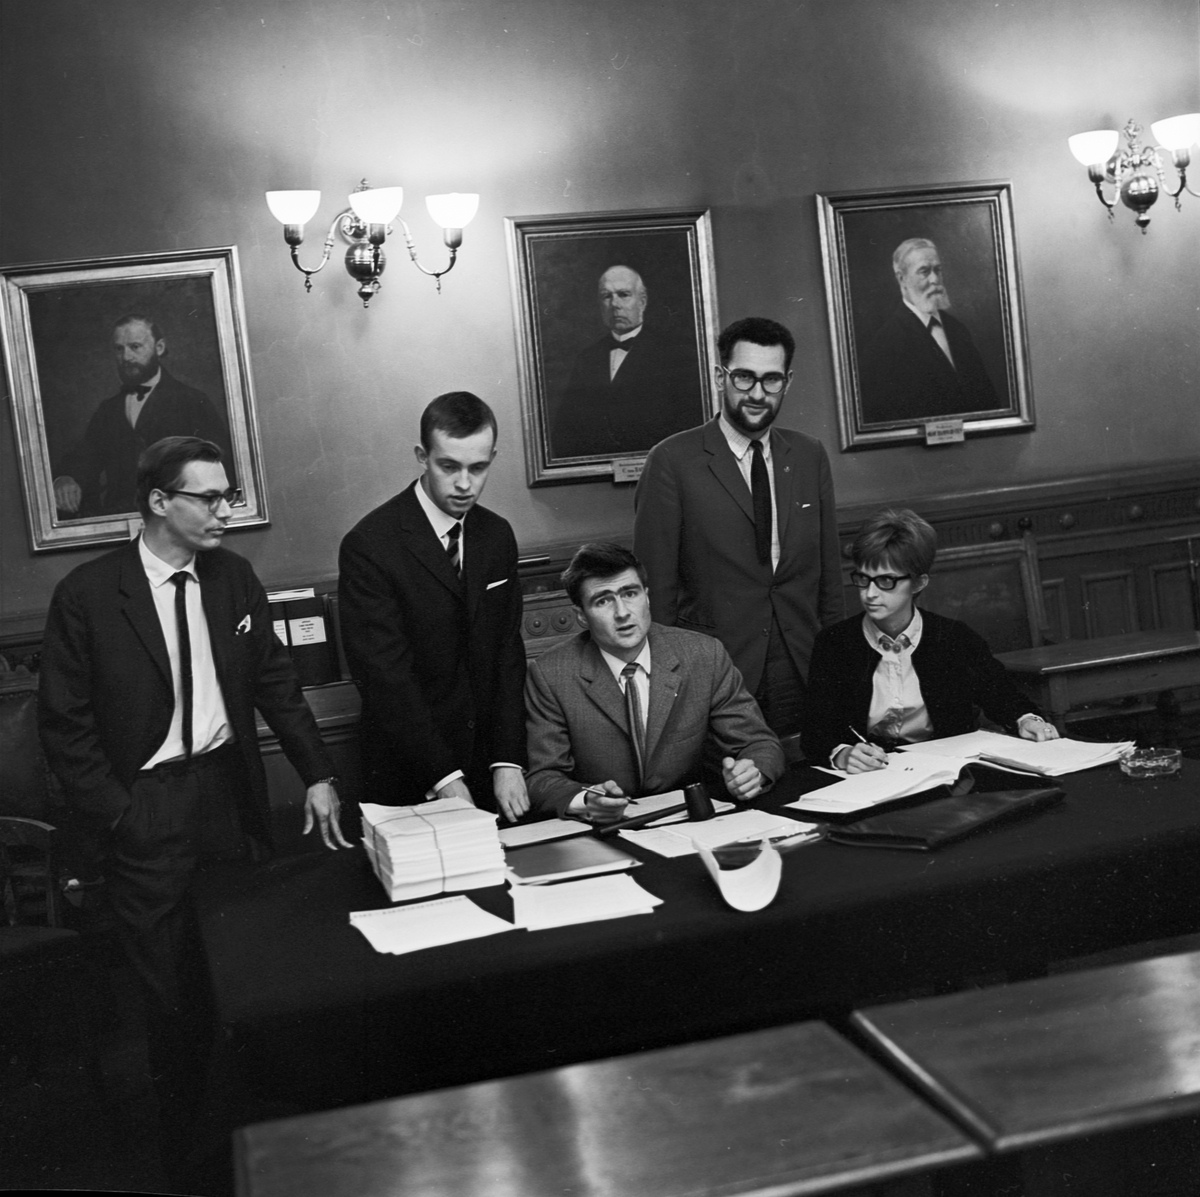 Studentkåren, historiskt tillfälle då rådhuset uppläts för kårdirektionen, Uppsala 1965